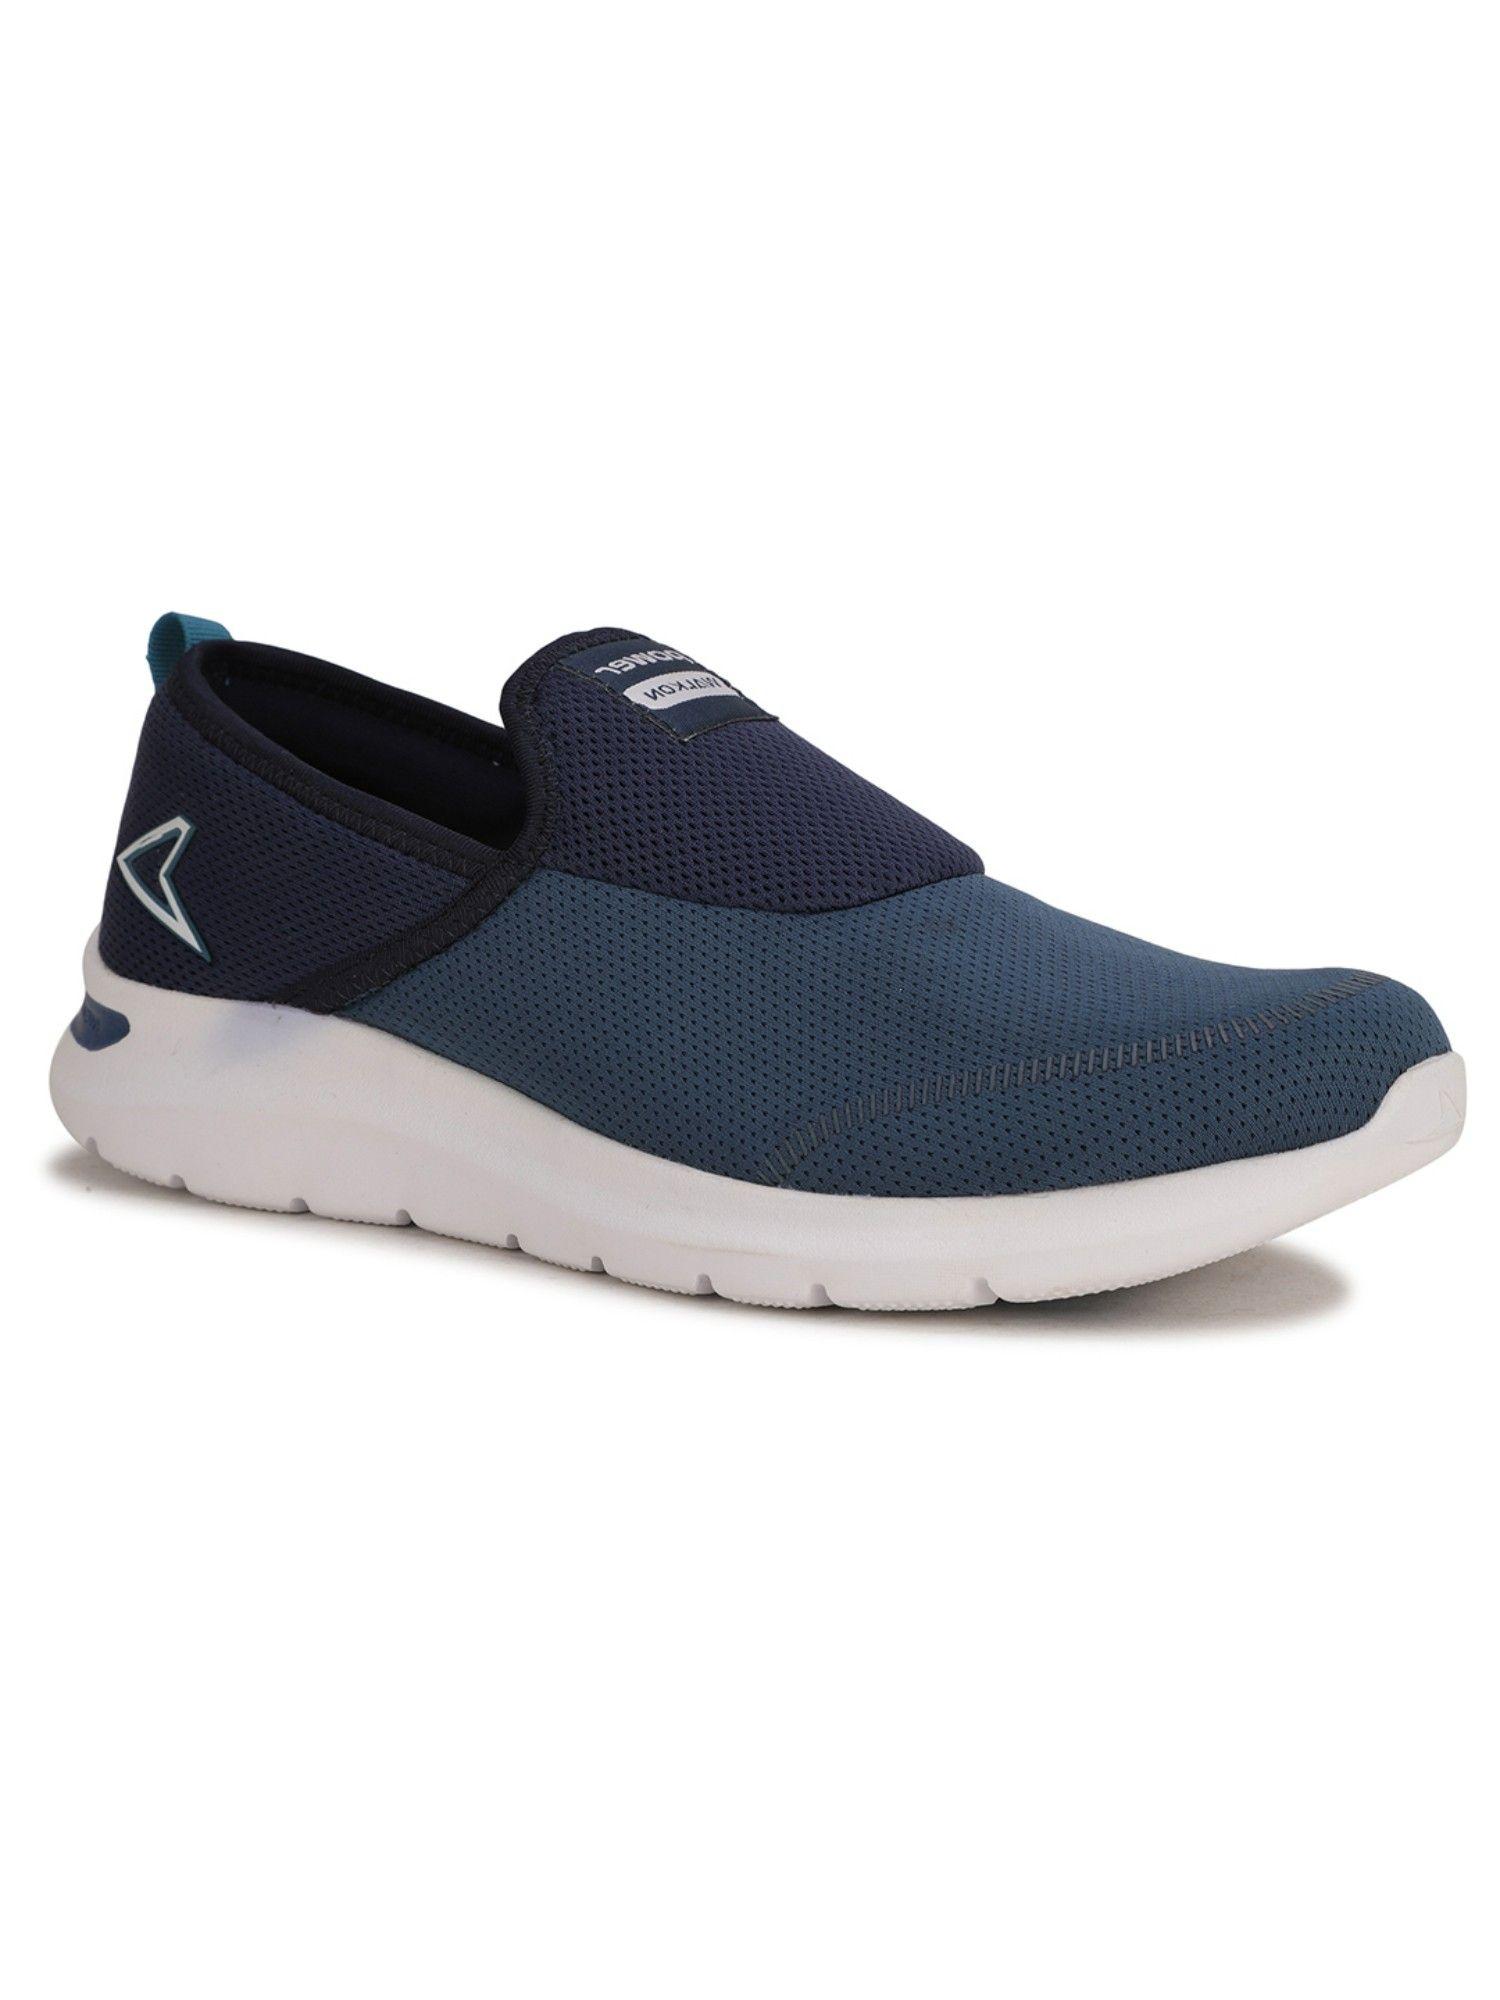 walking-shoes-for-men-(blue)